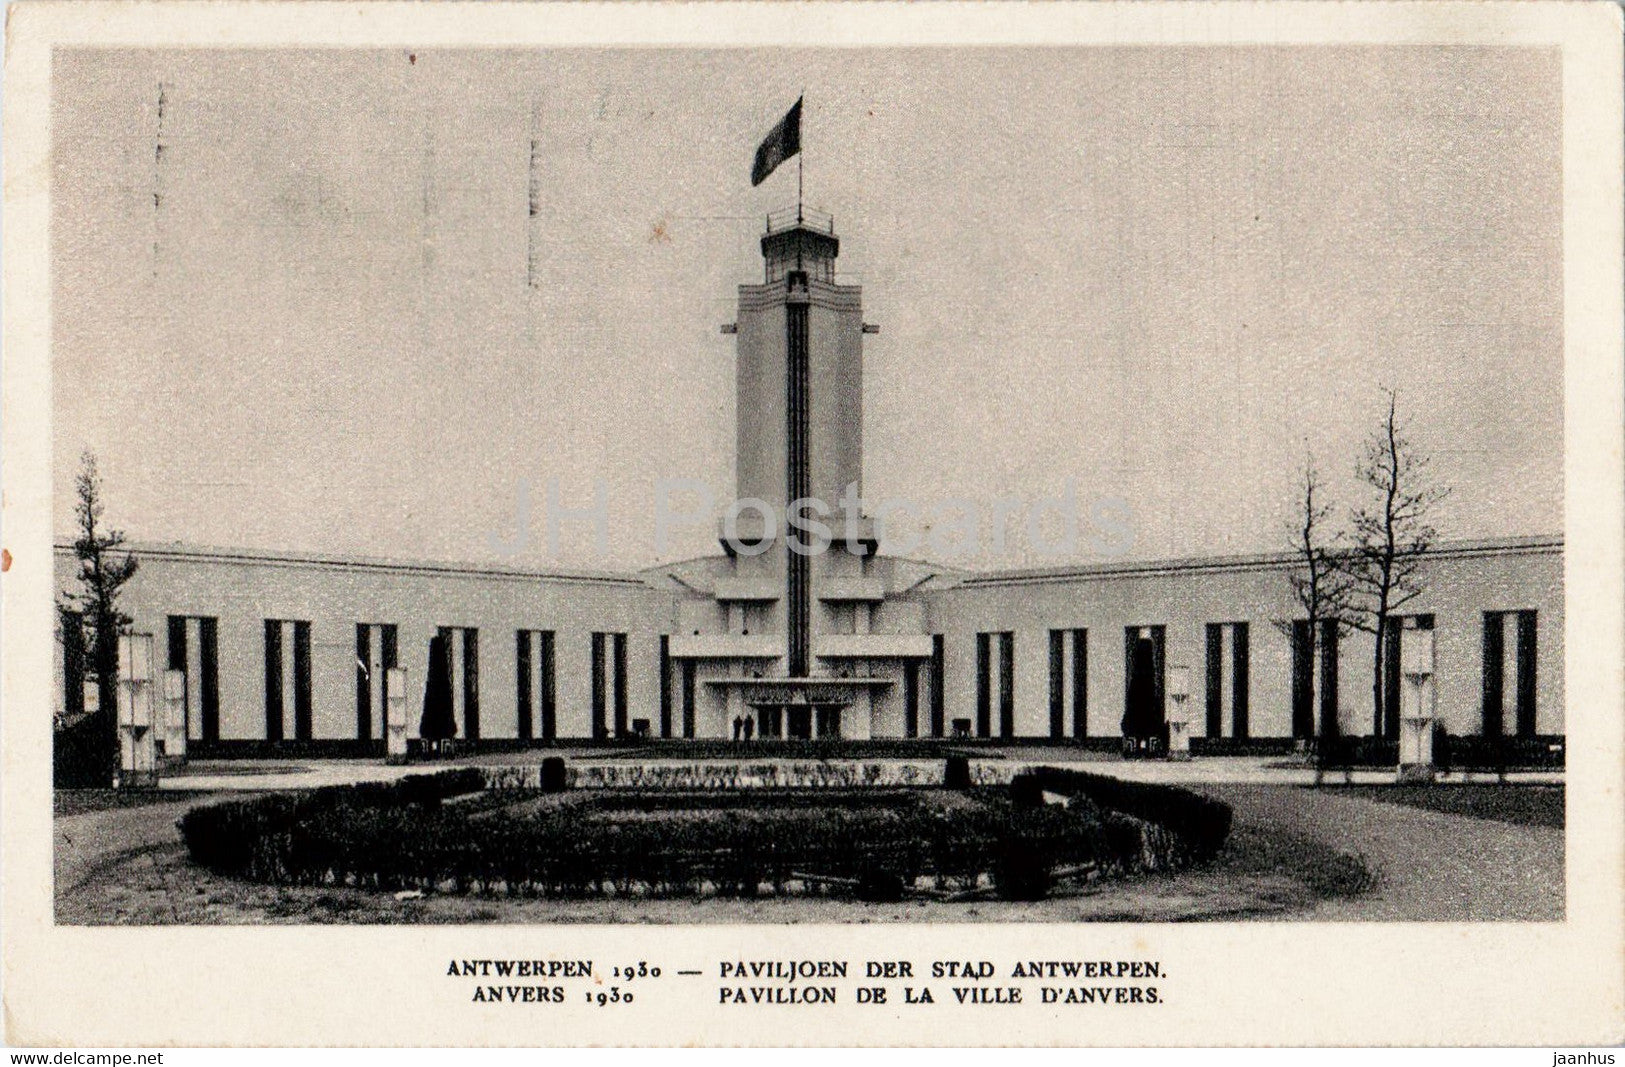 Anvers - Antwerpen - Paviljoen der Stad Antwerpen - old postcard - 1930 - Belgium - used - JH Postcards